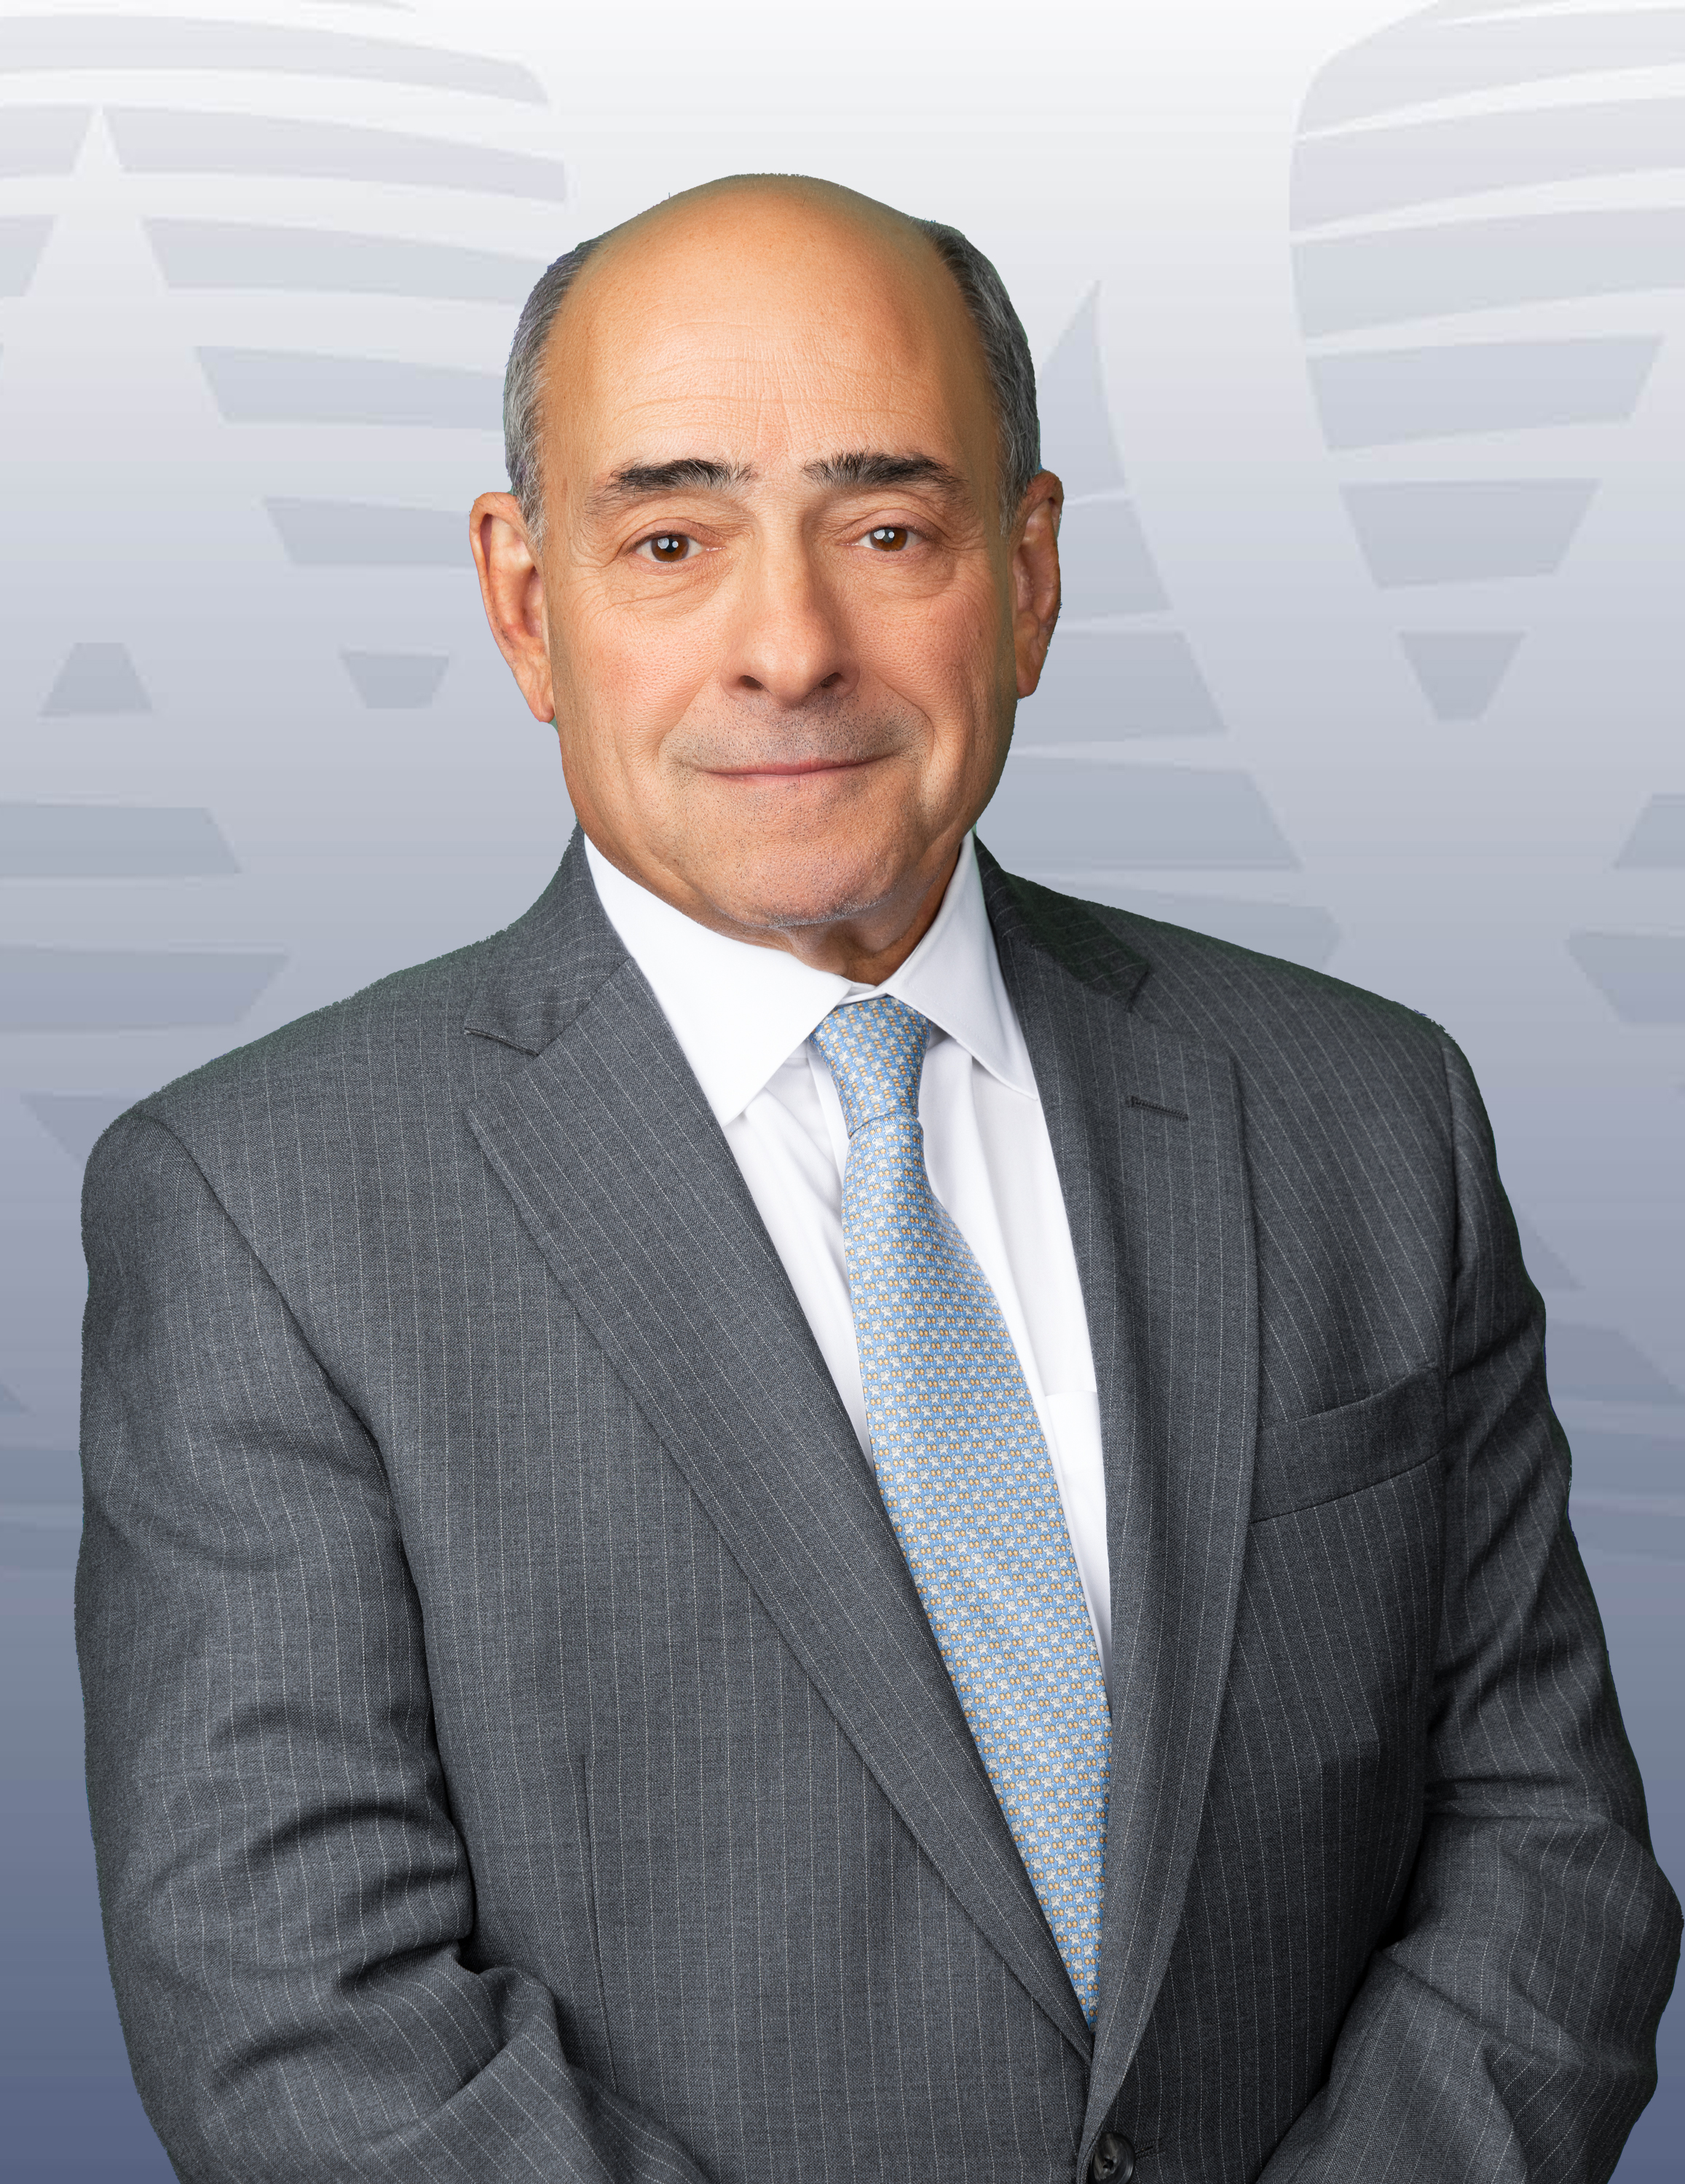 Michael D. Israel